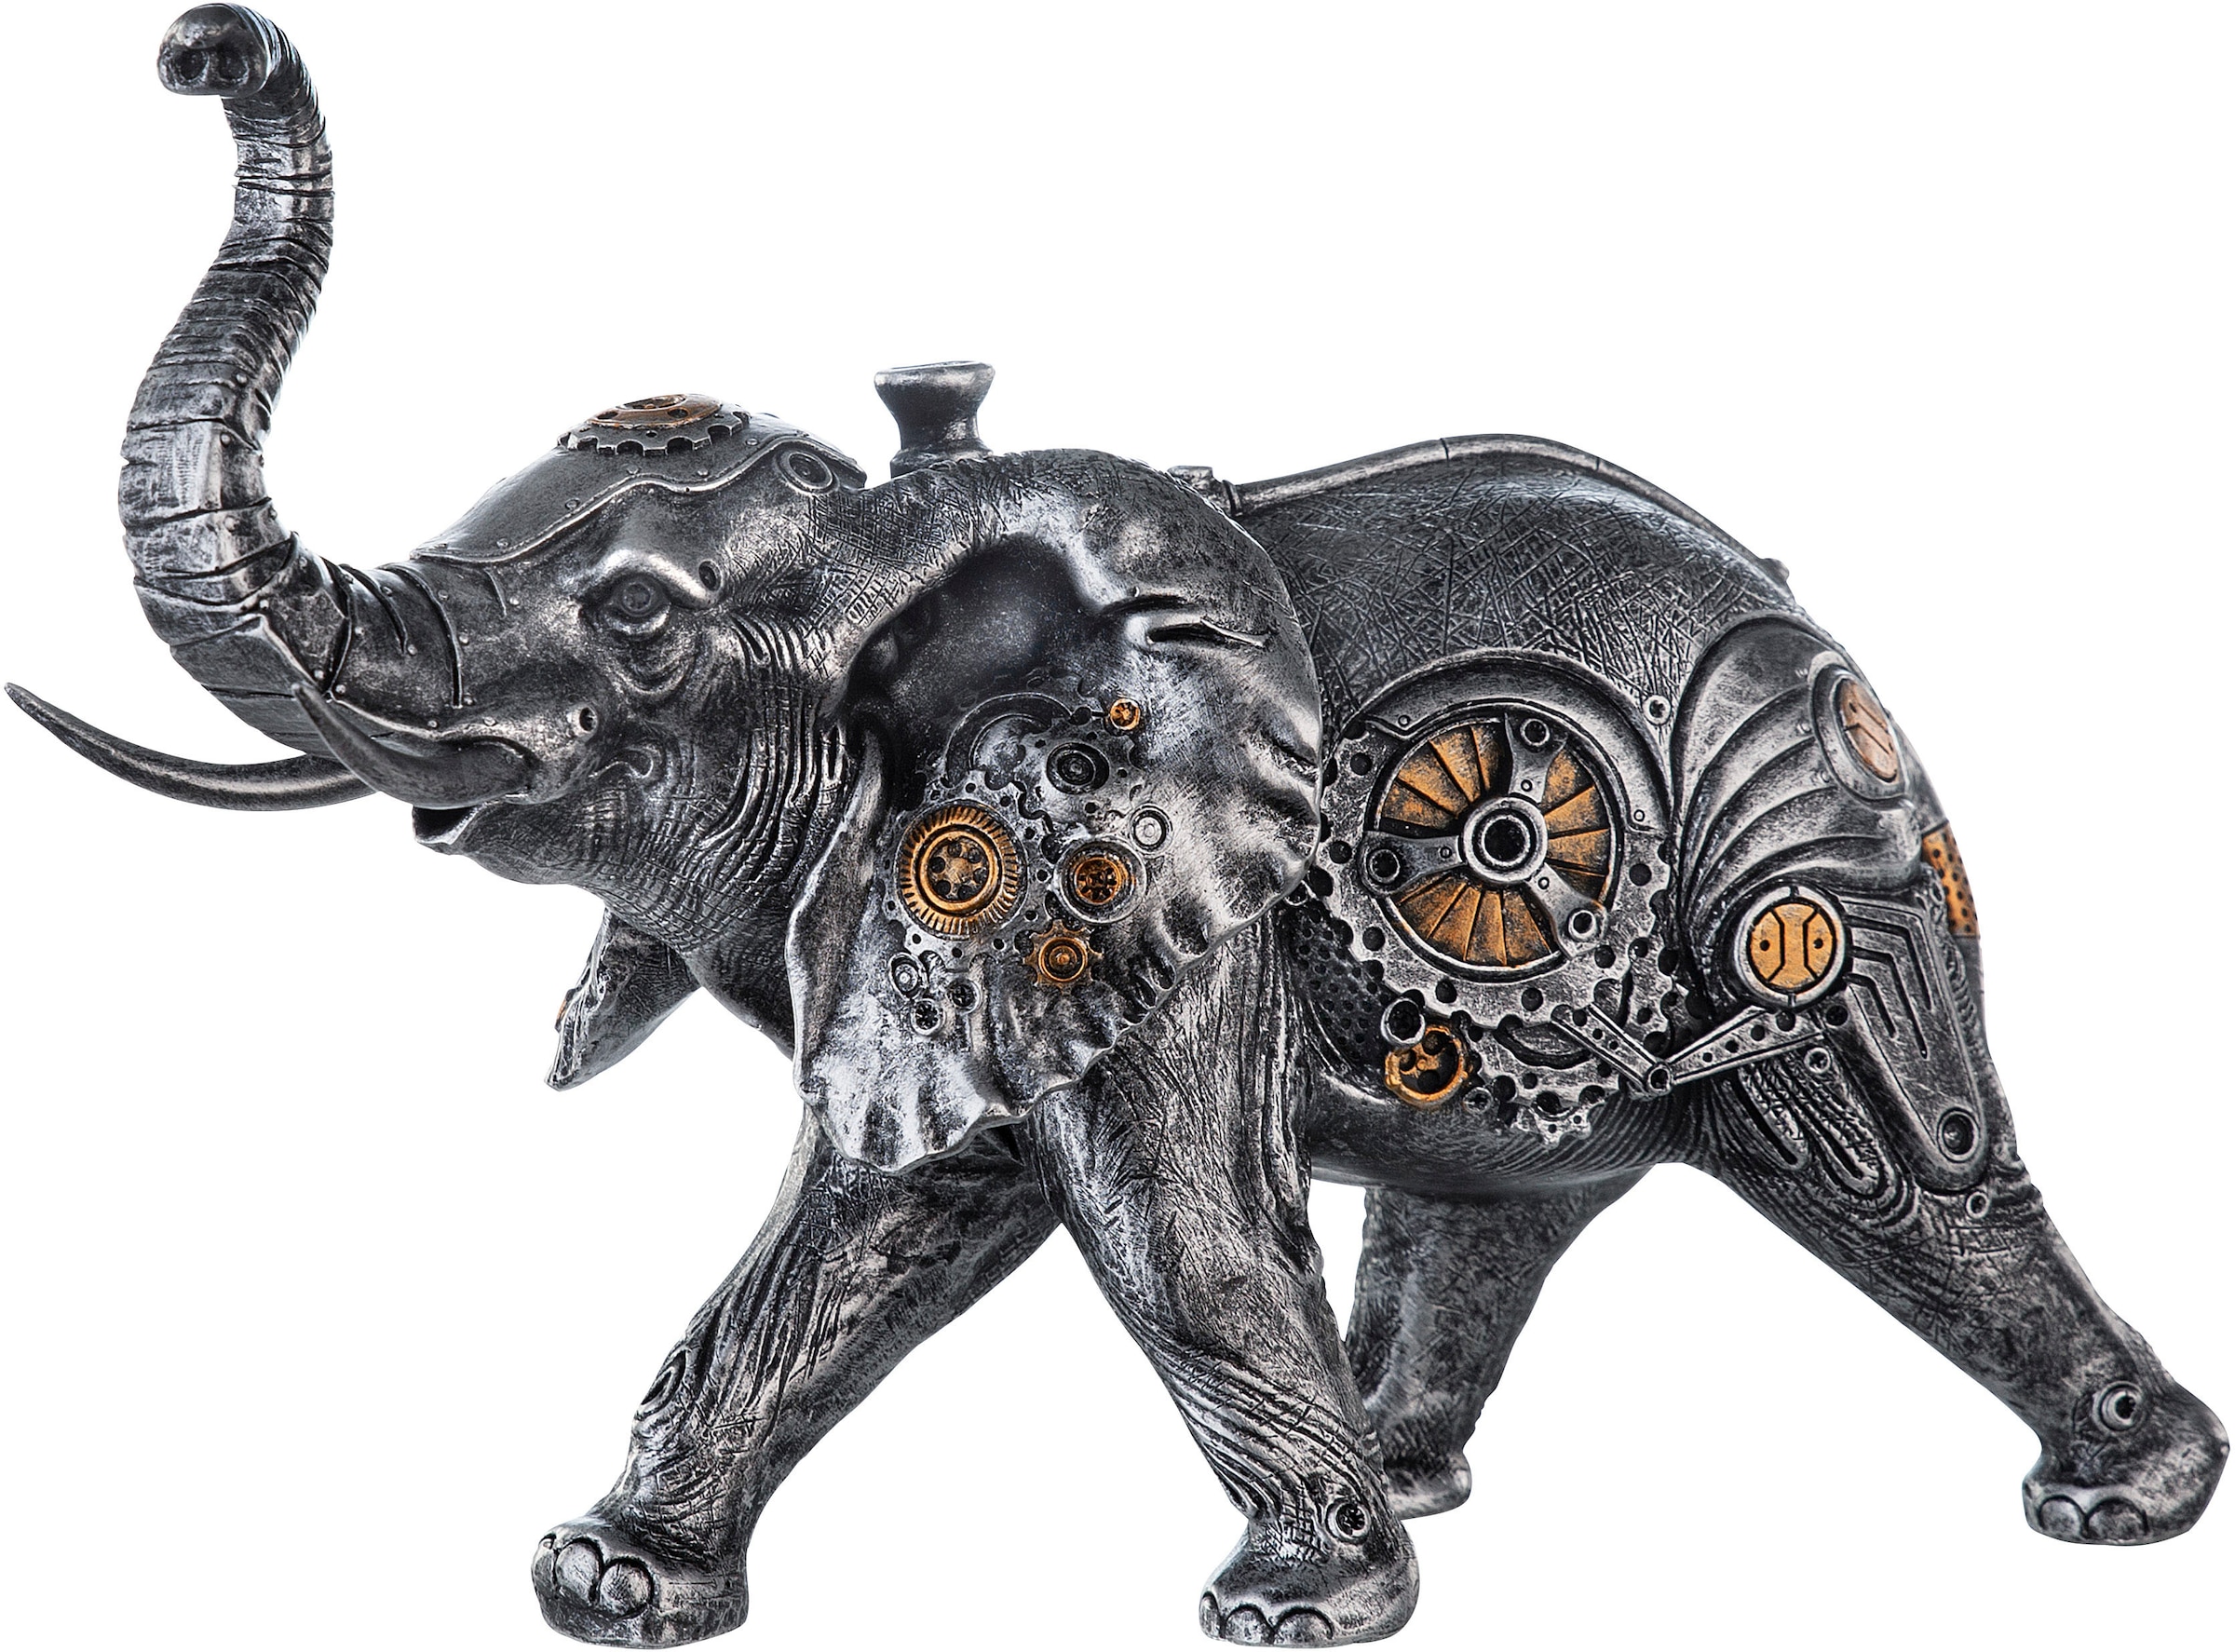 Casablanca by Gilde Tierfigur "Skulptur Steampunk Elephant", mit kupferfarbenen Elementen